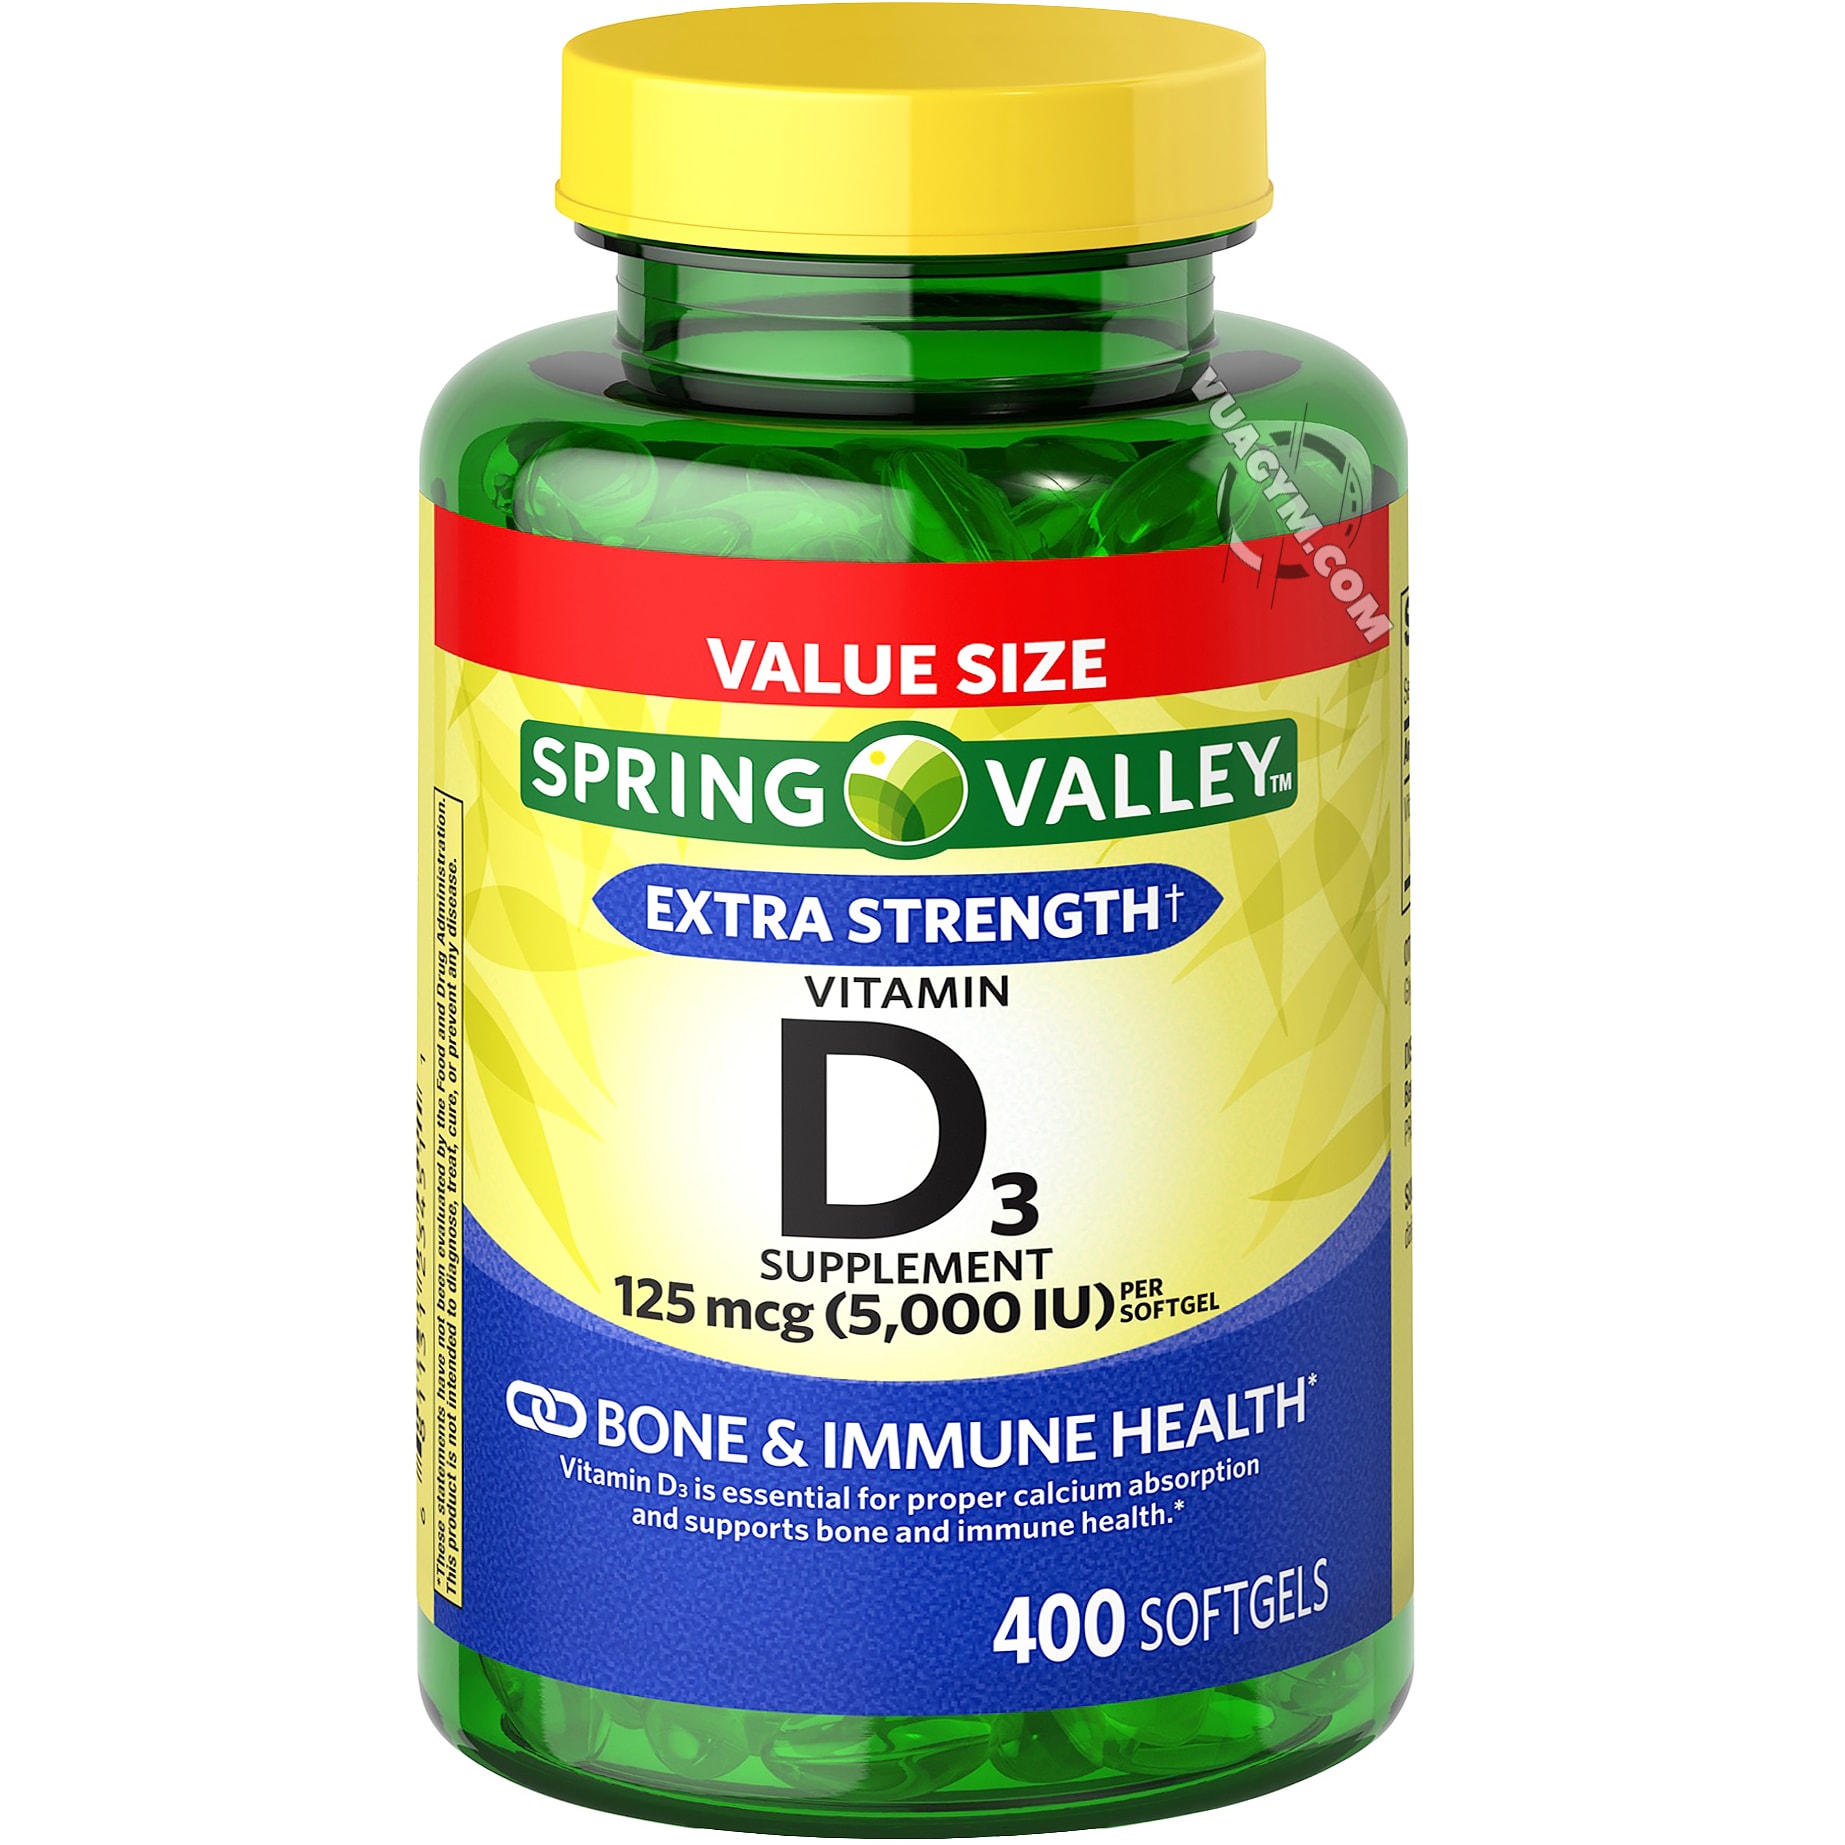 Có những người nào cần sử dụng Vitamin D3 5000 IU?
